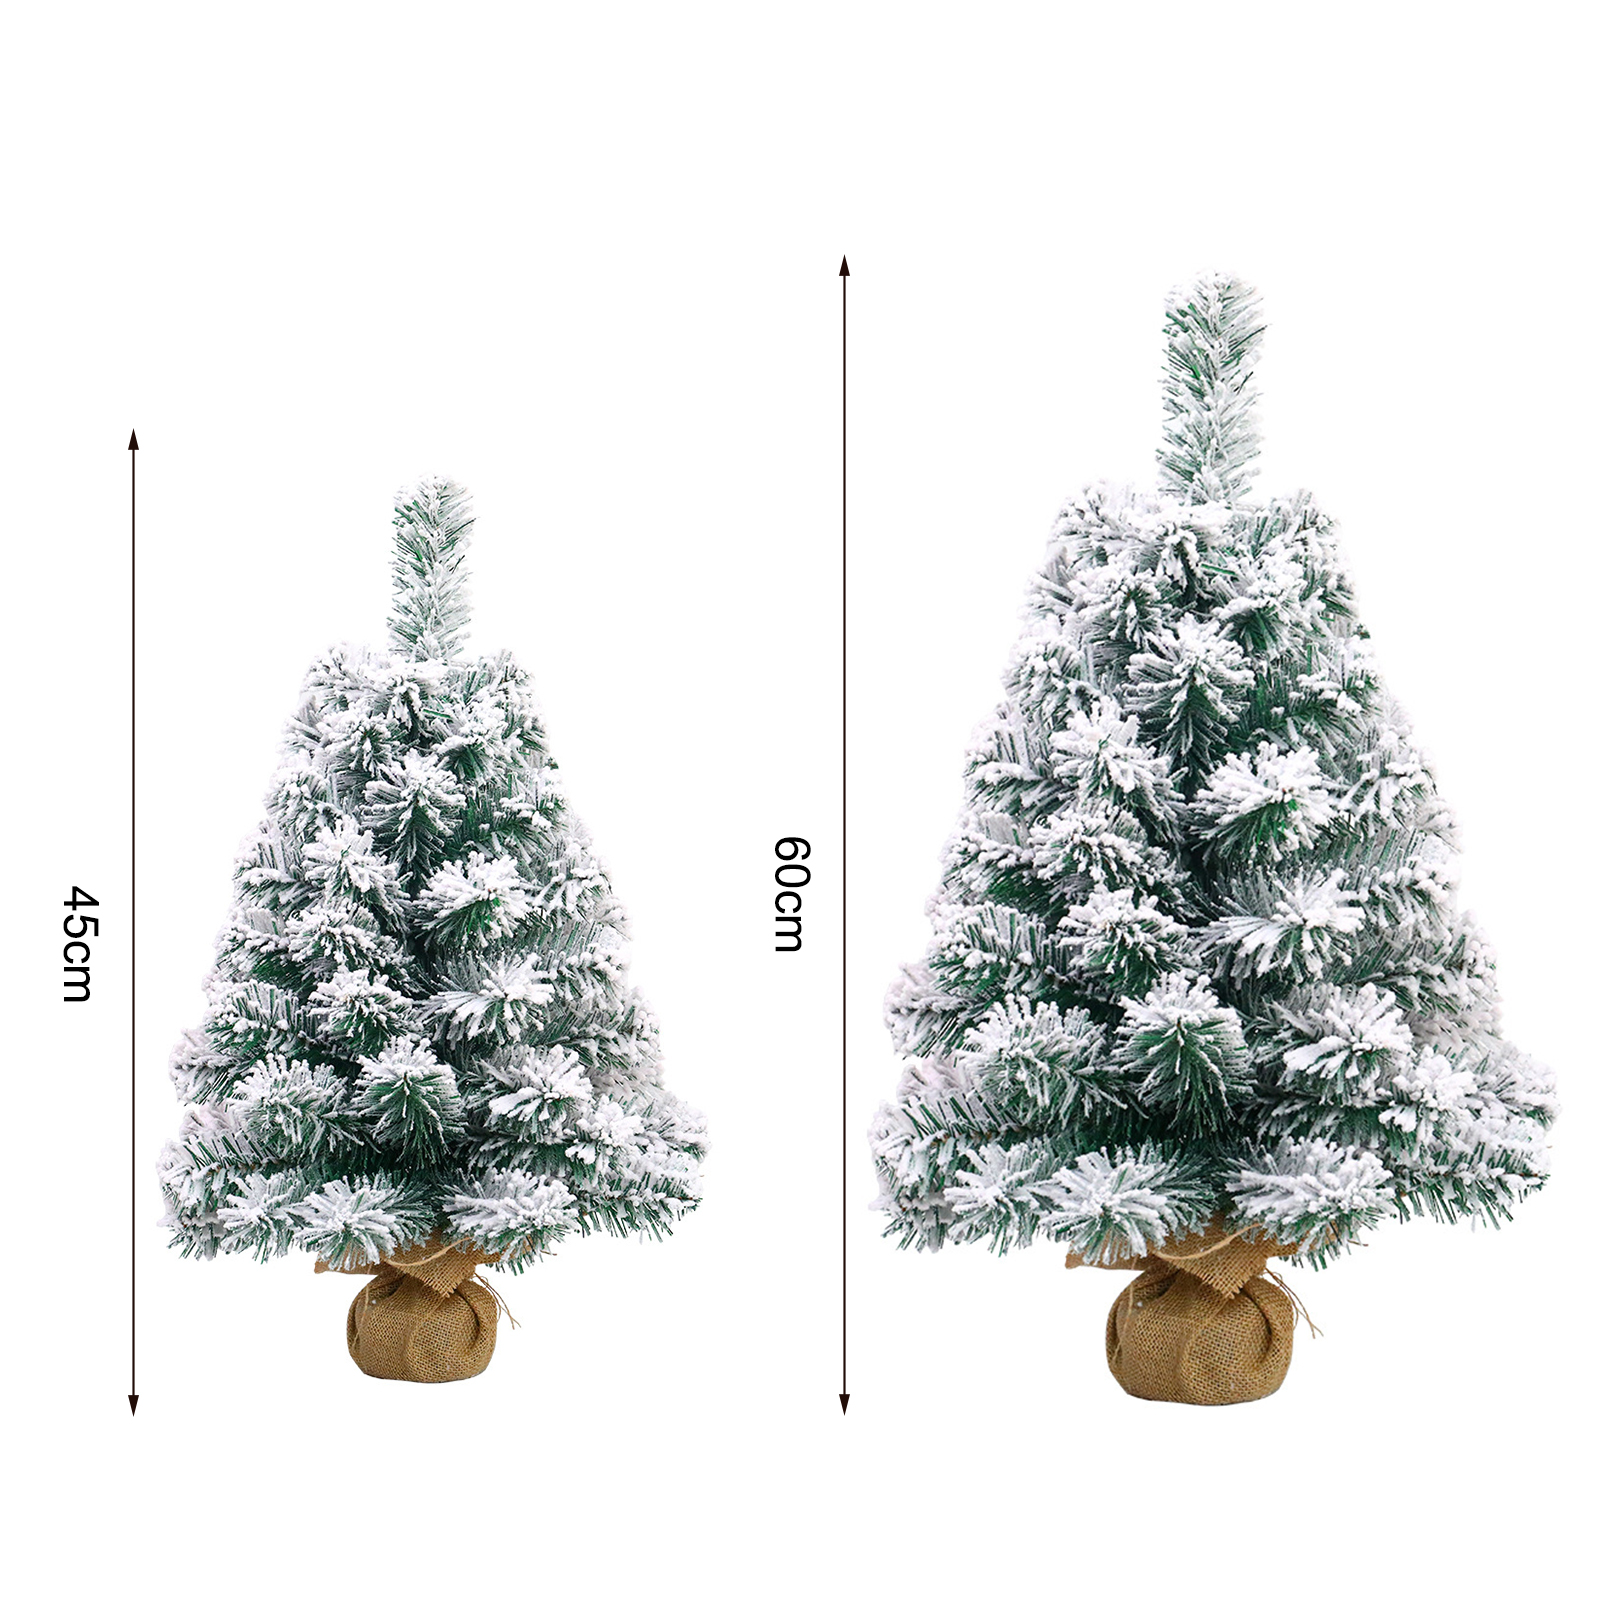 TABLETOP JUL TREE FLOCKING SNOW 45/60 cm Mini Christmas Tree Artificial Tabletop Christmas Tree Ornament för matsal